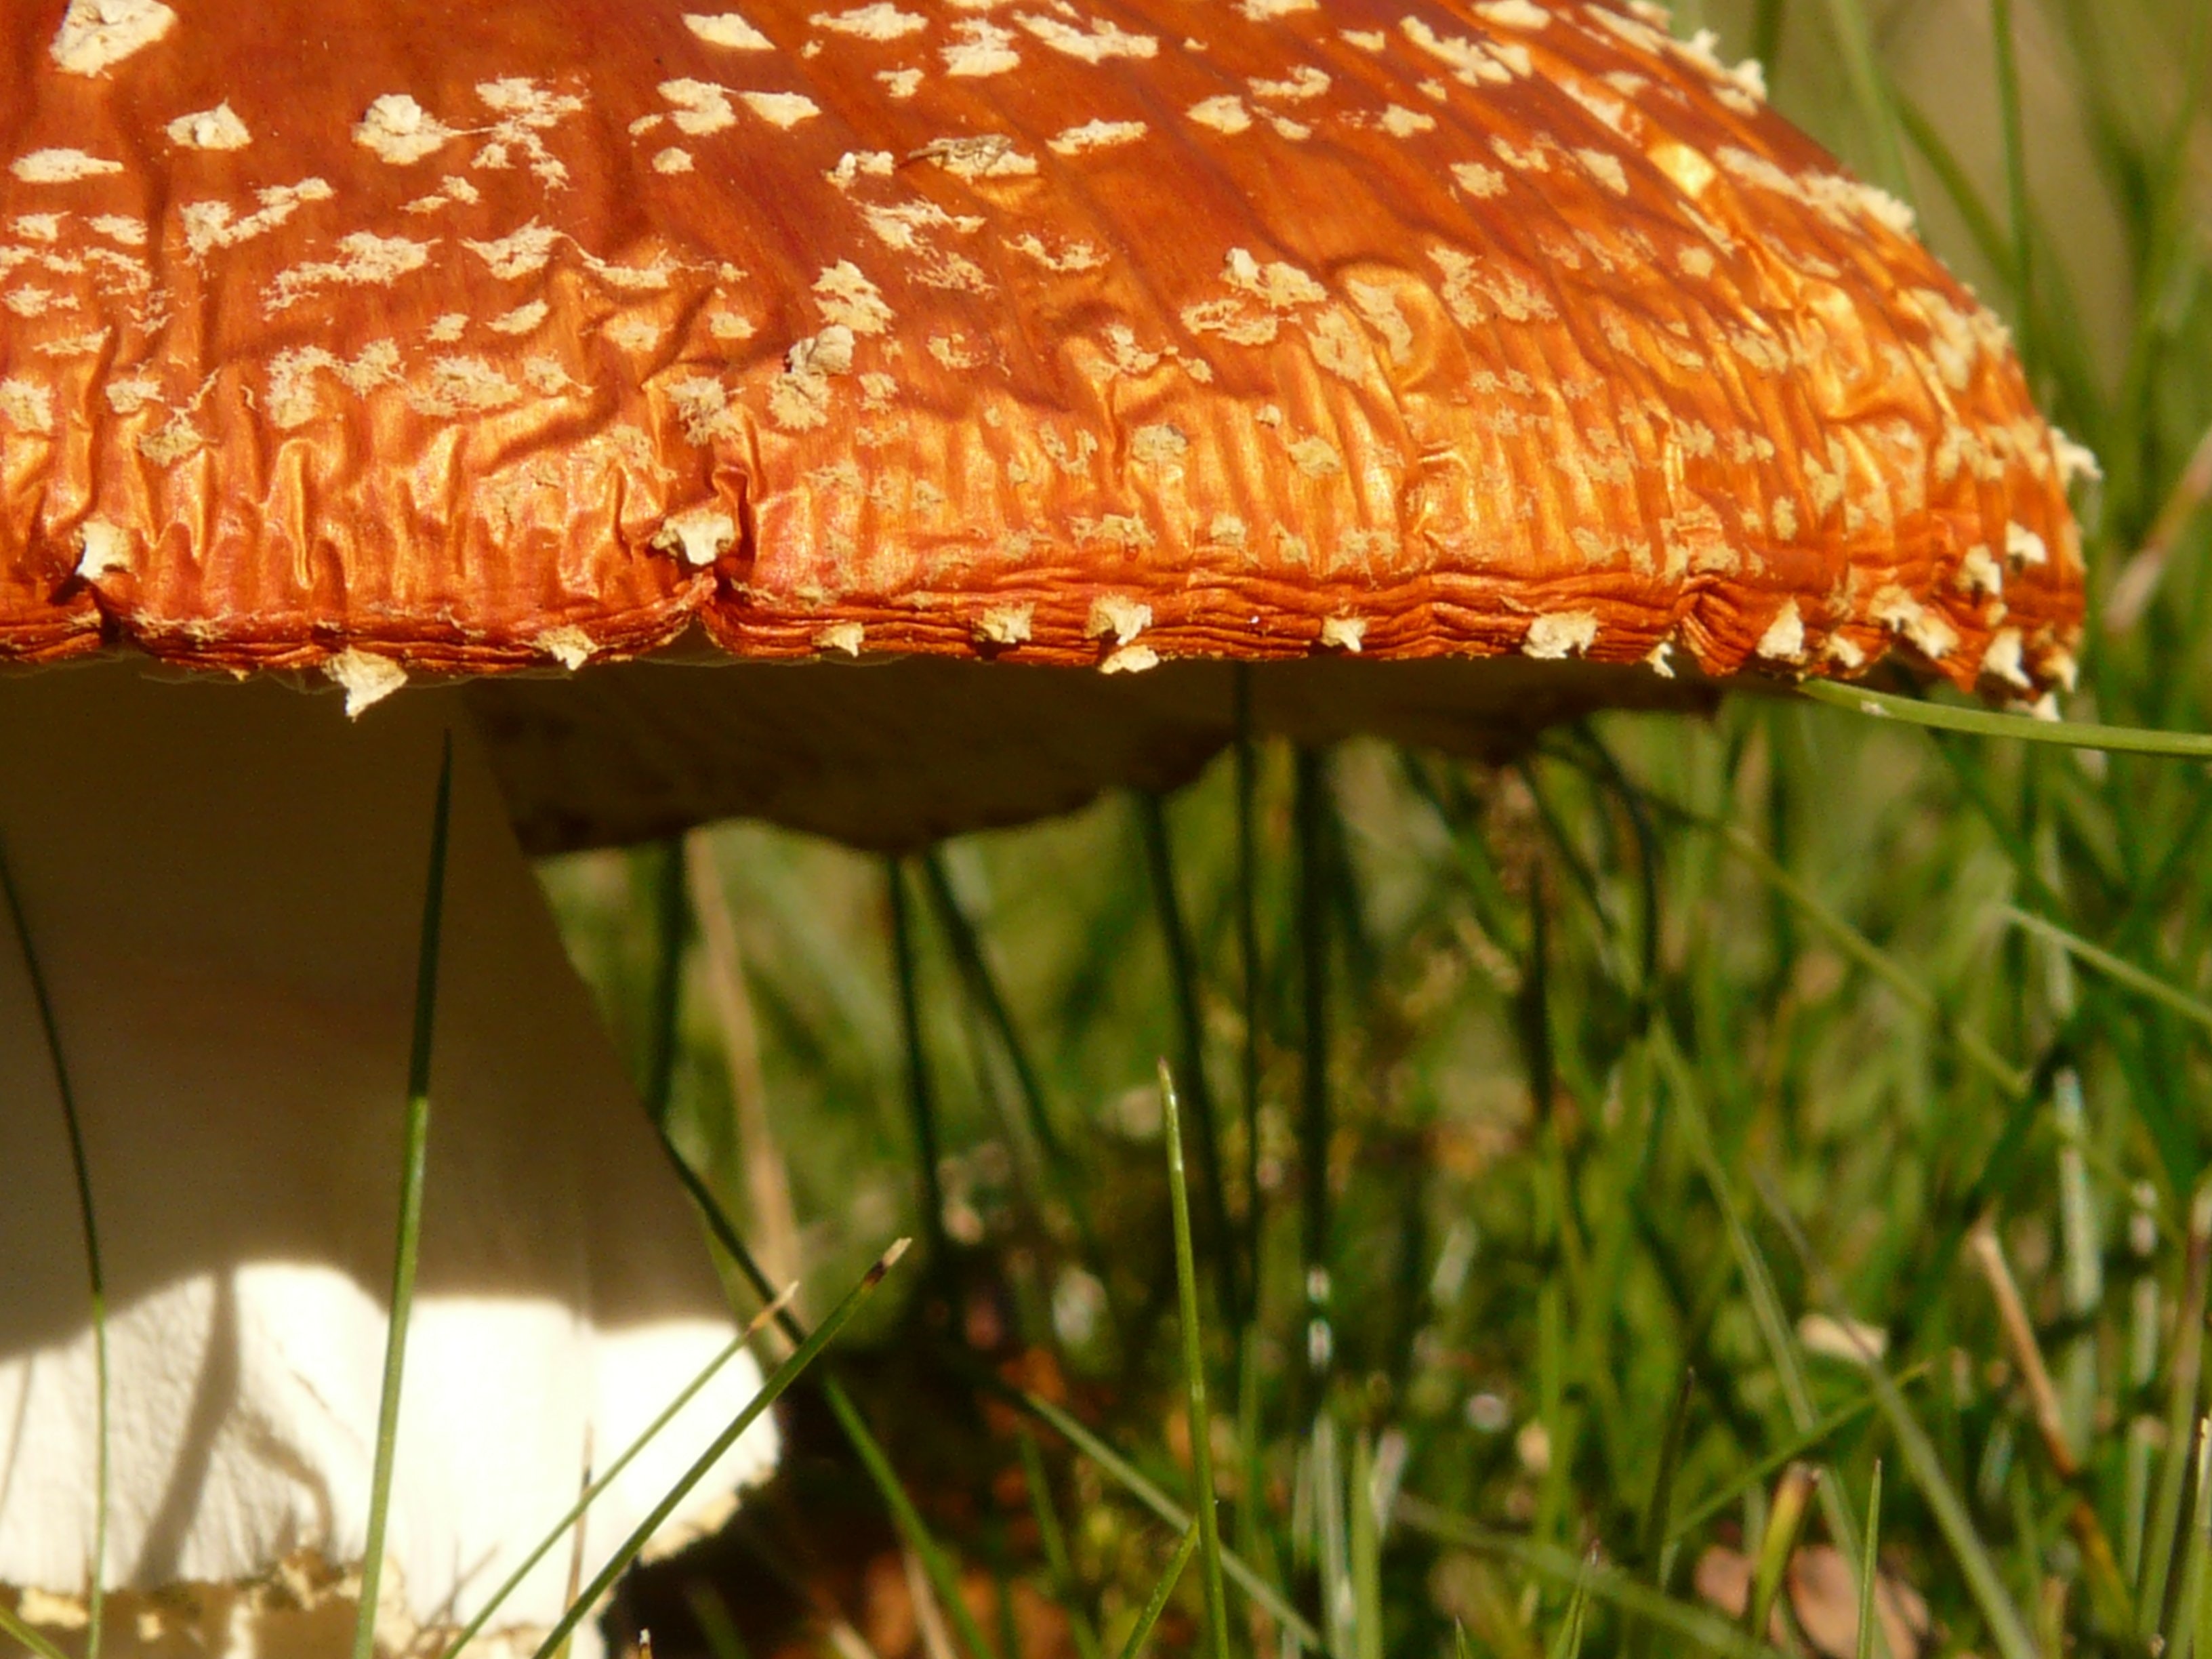 Orange and white mushroom on grass photo